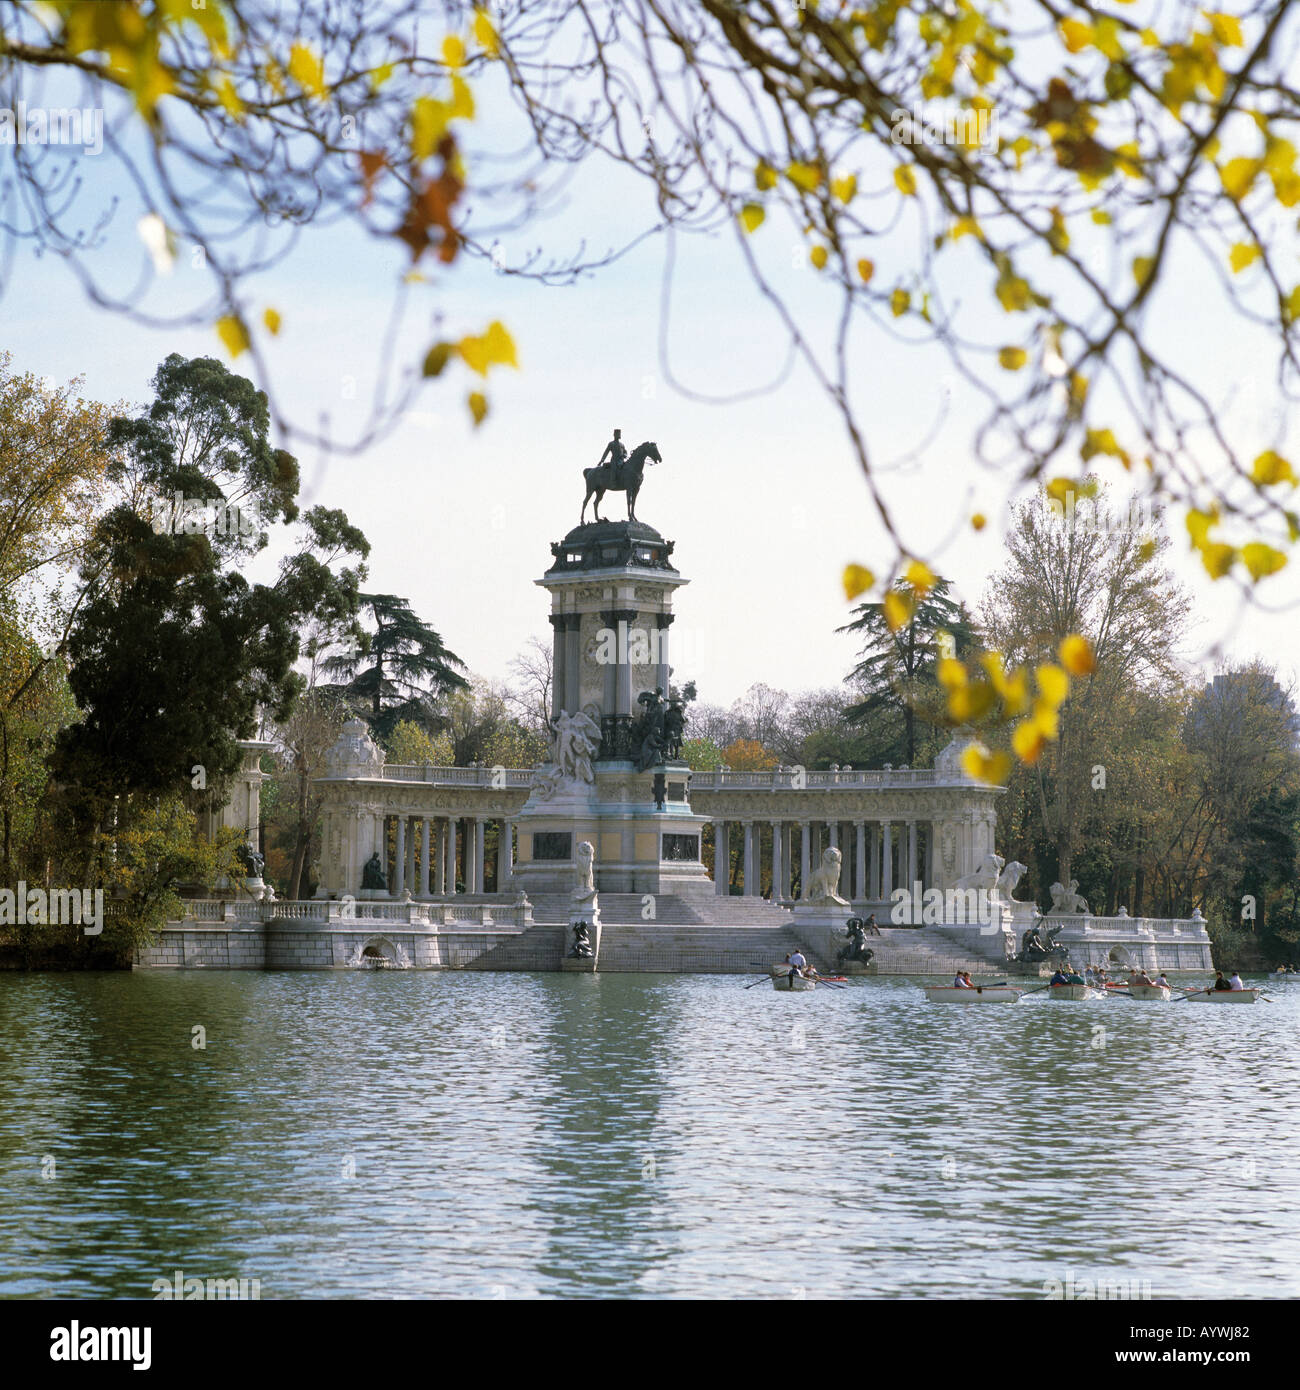 Parque del Retiro, Retiro-Park, Denkmal Koenig Alfons XII, Teich mit Ruderbooten, herbstlich, Madrid Stock Photo